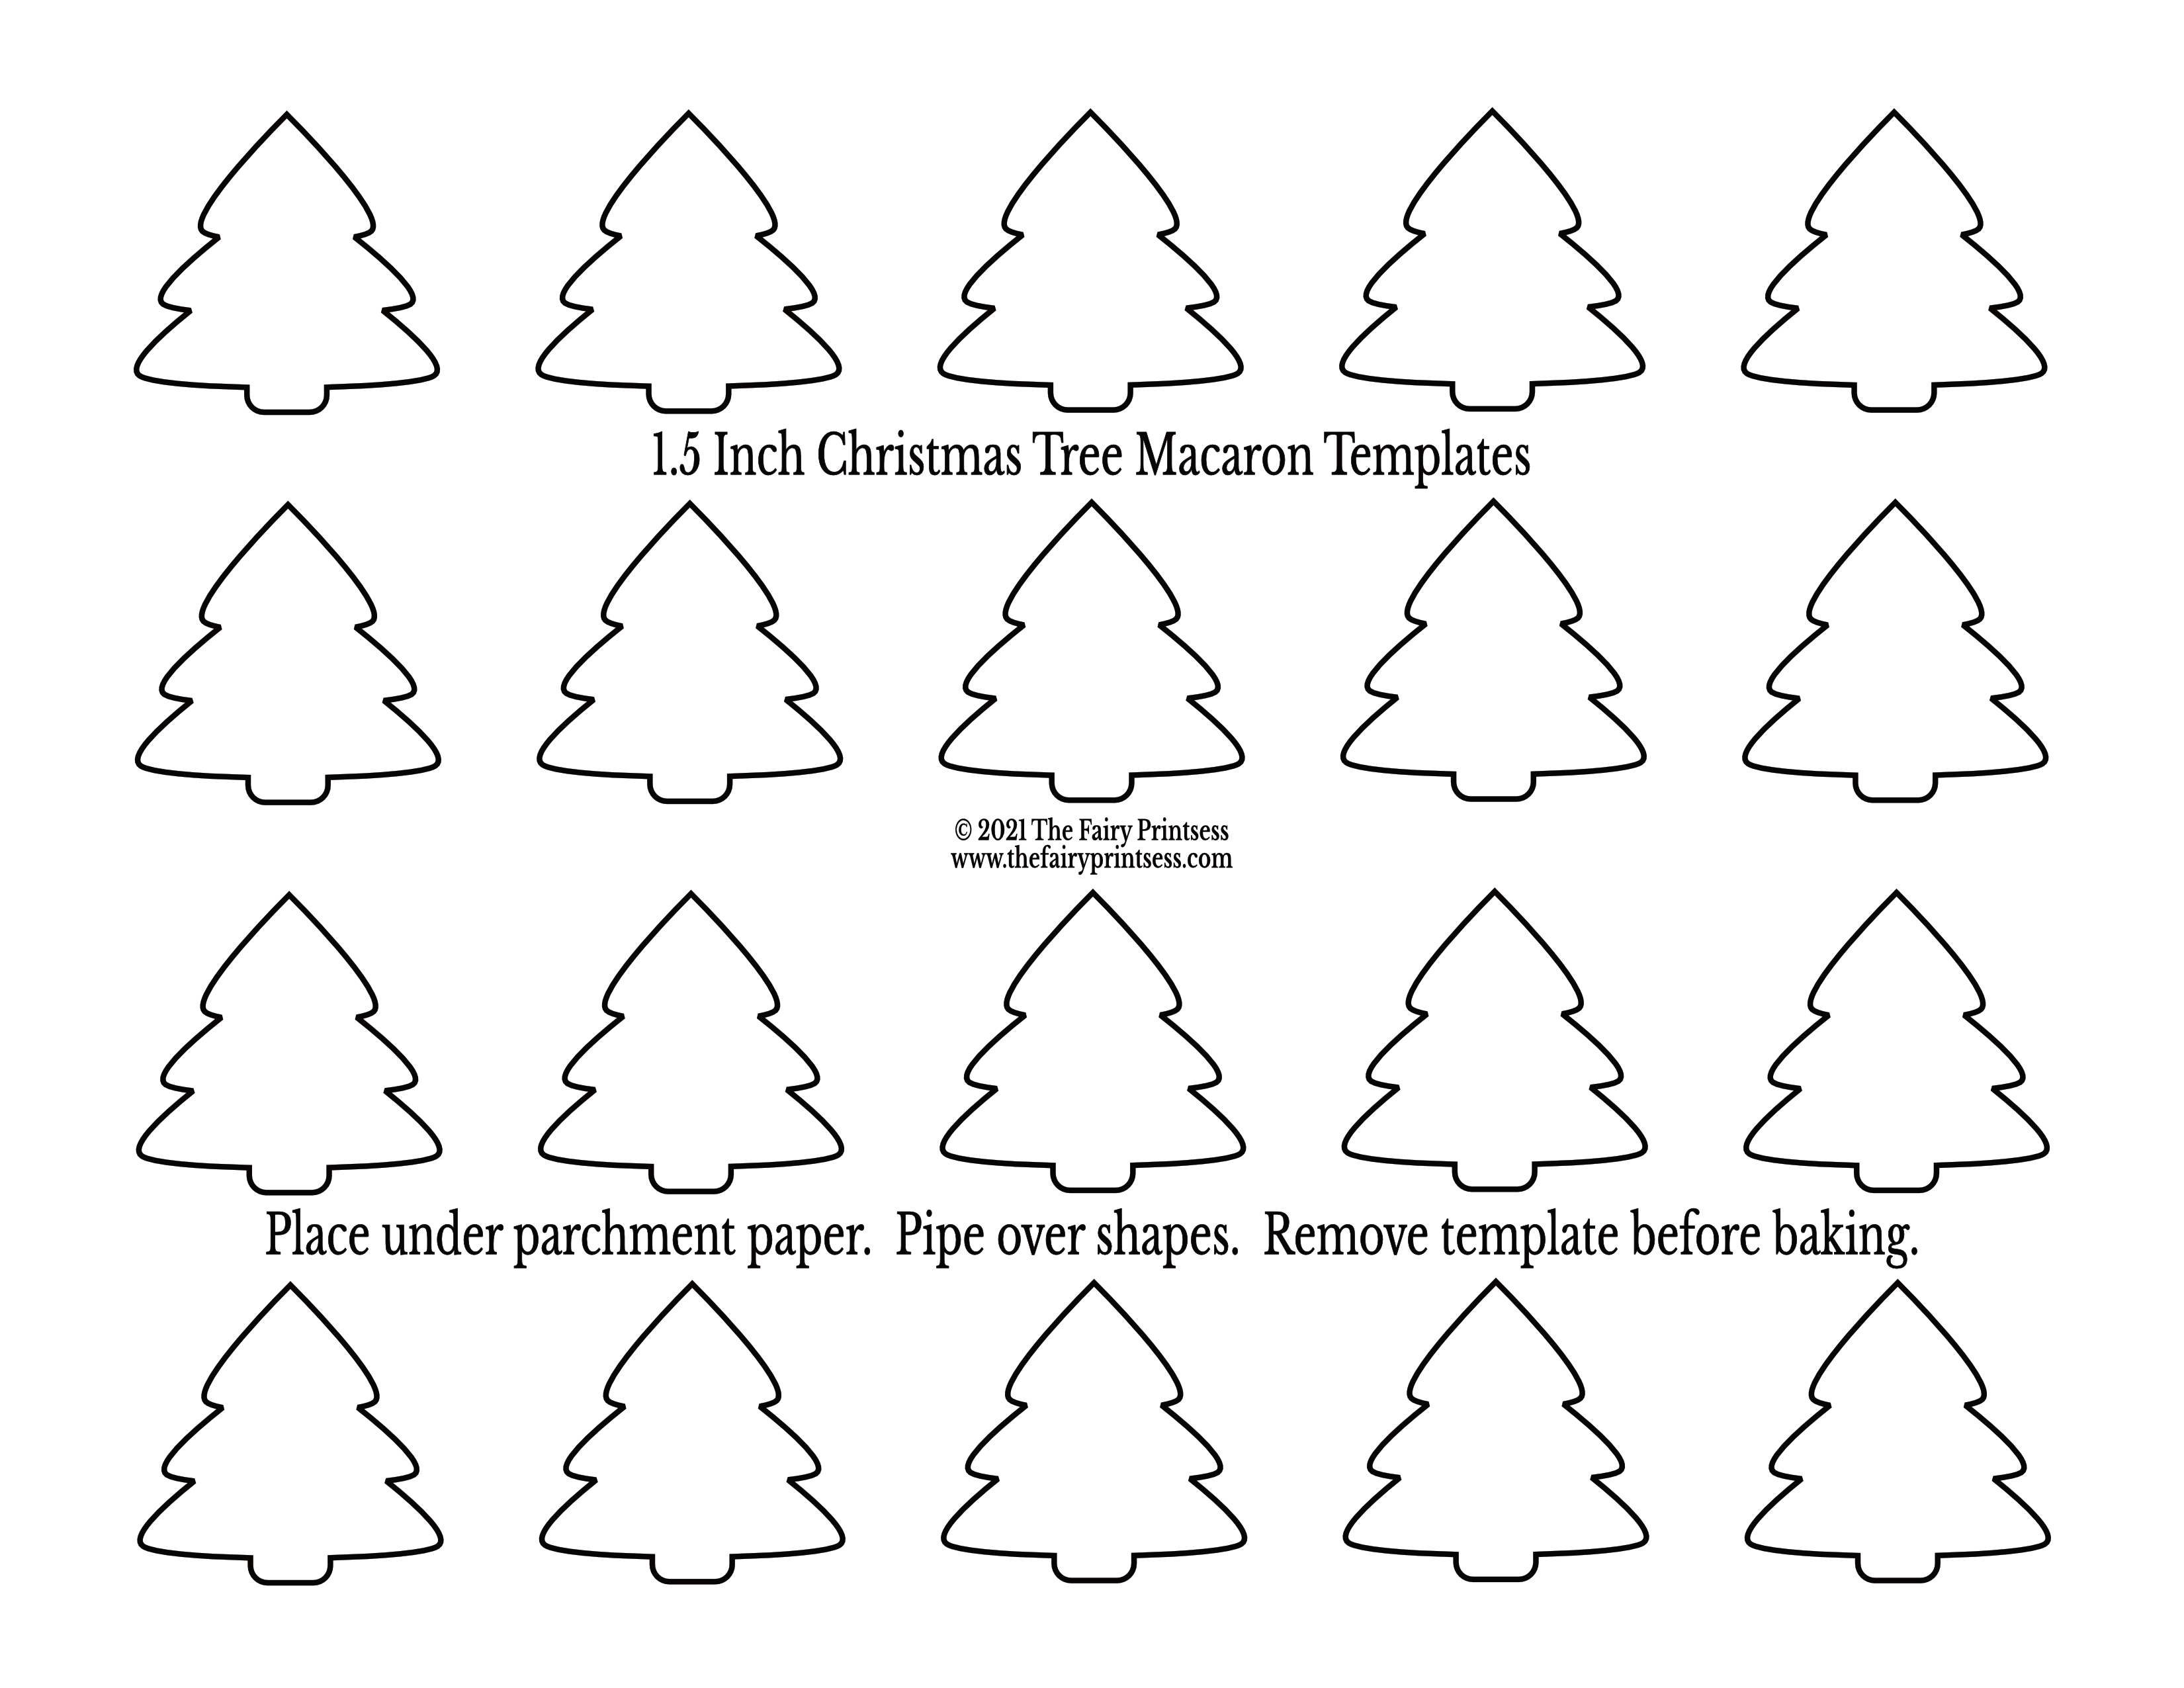 Christmas Macaron Templates Free Printables For Holiday Baking!